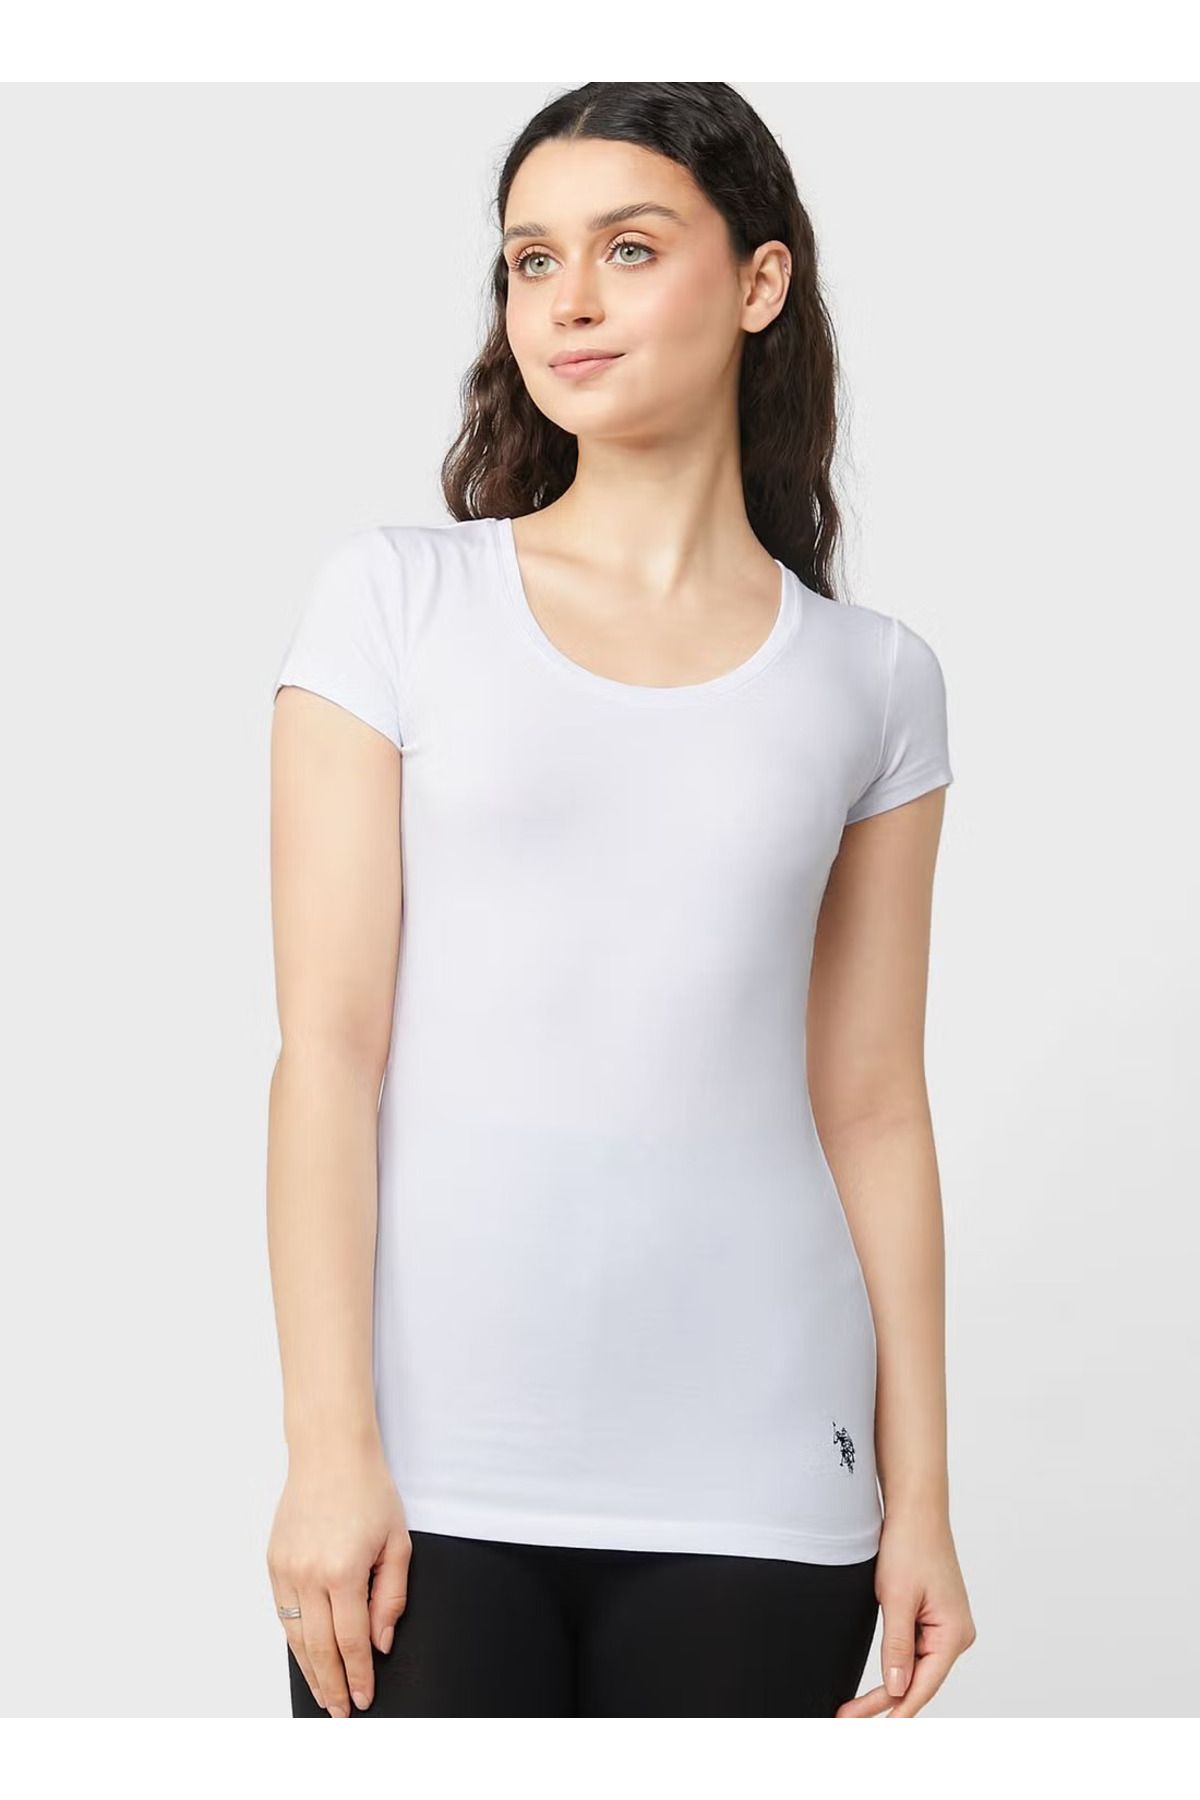 U.S. Polo Assn. Kadın Pamuklu Likralı Modal Basic Derin Yakalı Kısa Kollu Beyaz T-shirt